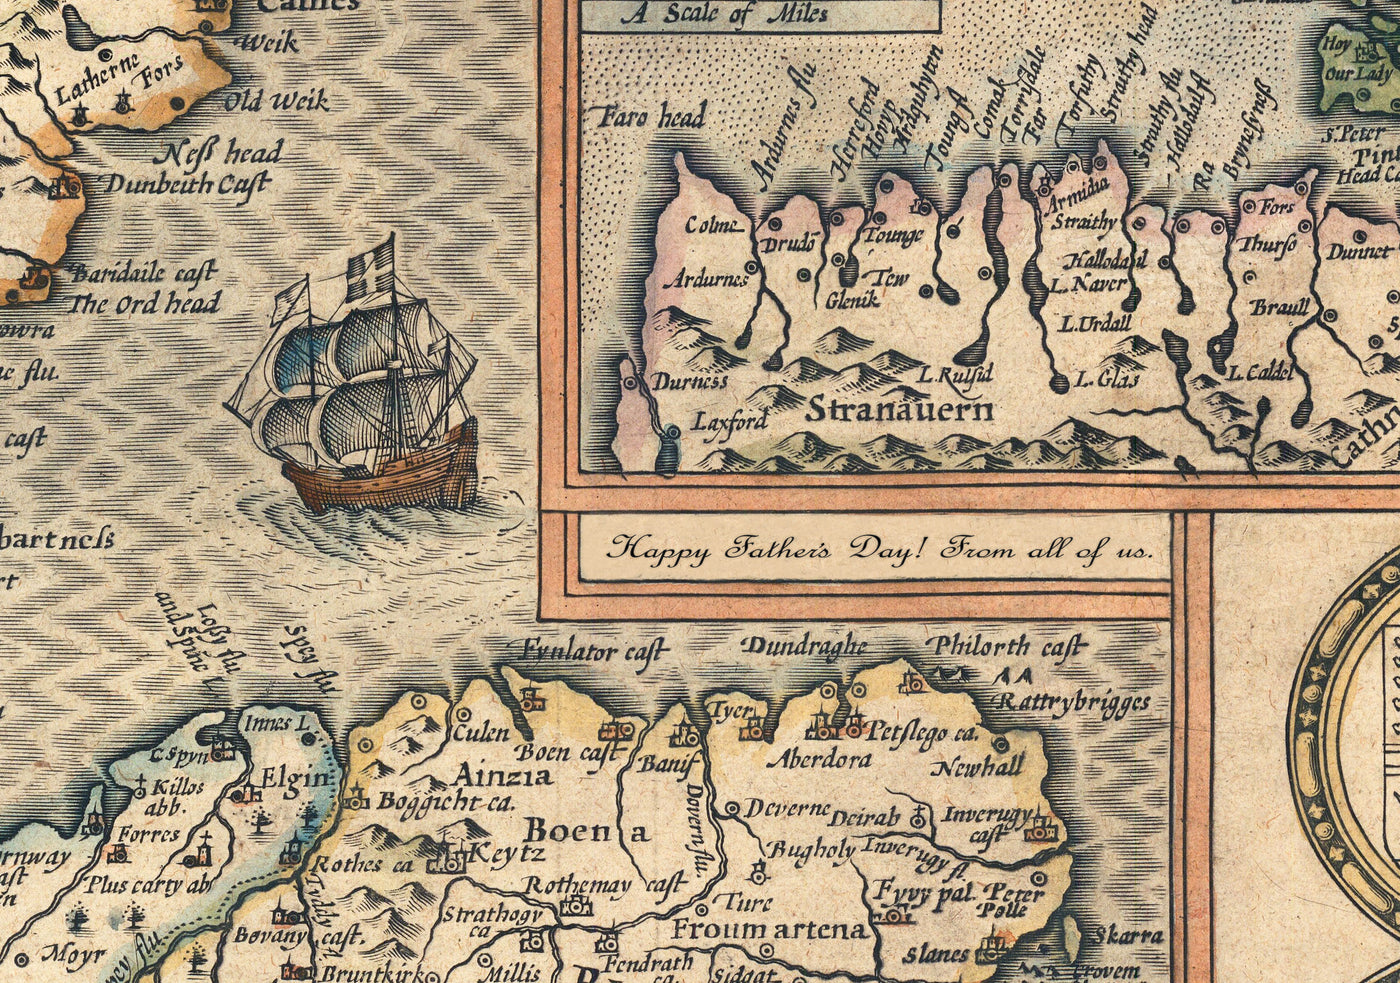 Erste alte Karte von Zentralwales im Jahr 1578 von Christopher Saxton - Powys, Ceredigion, Carmarthenshire, Aberystwyth, Cardigan